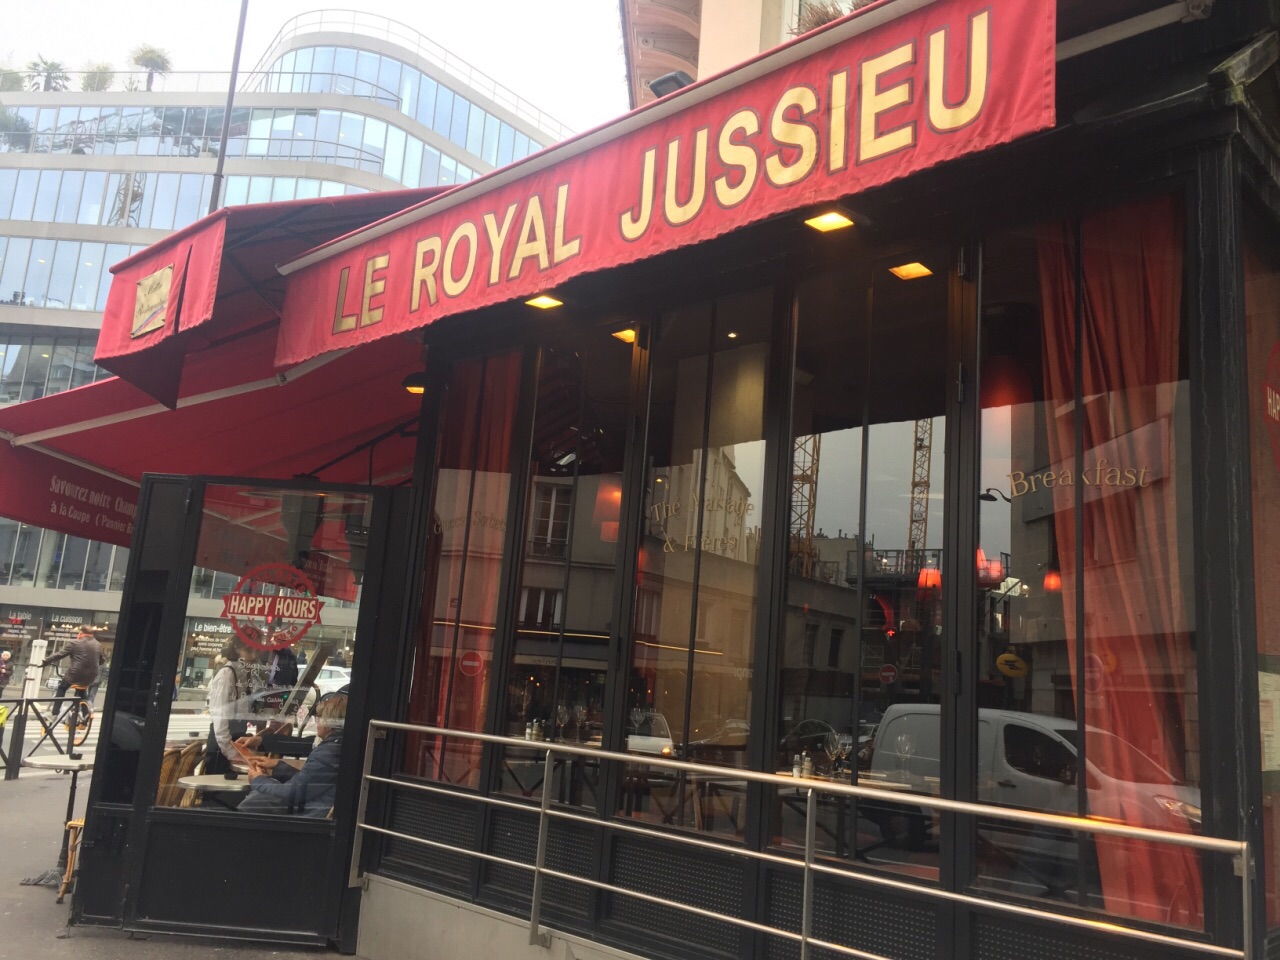 Le Royal Jussieu restaurants, addresses, phone numbers, photos, real user  reviews, 1 rue des Ecoles, Paris 75005 France, Paris restaurant  recommendations - Trip.com